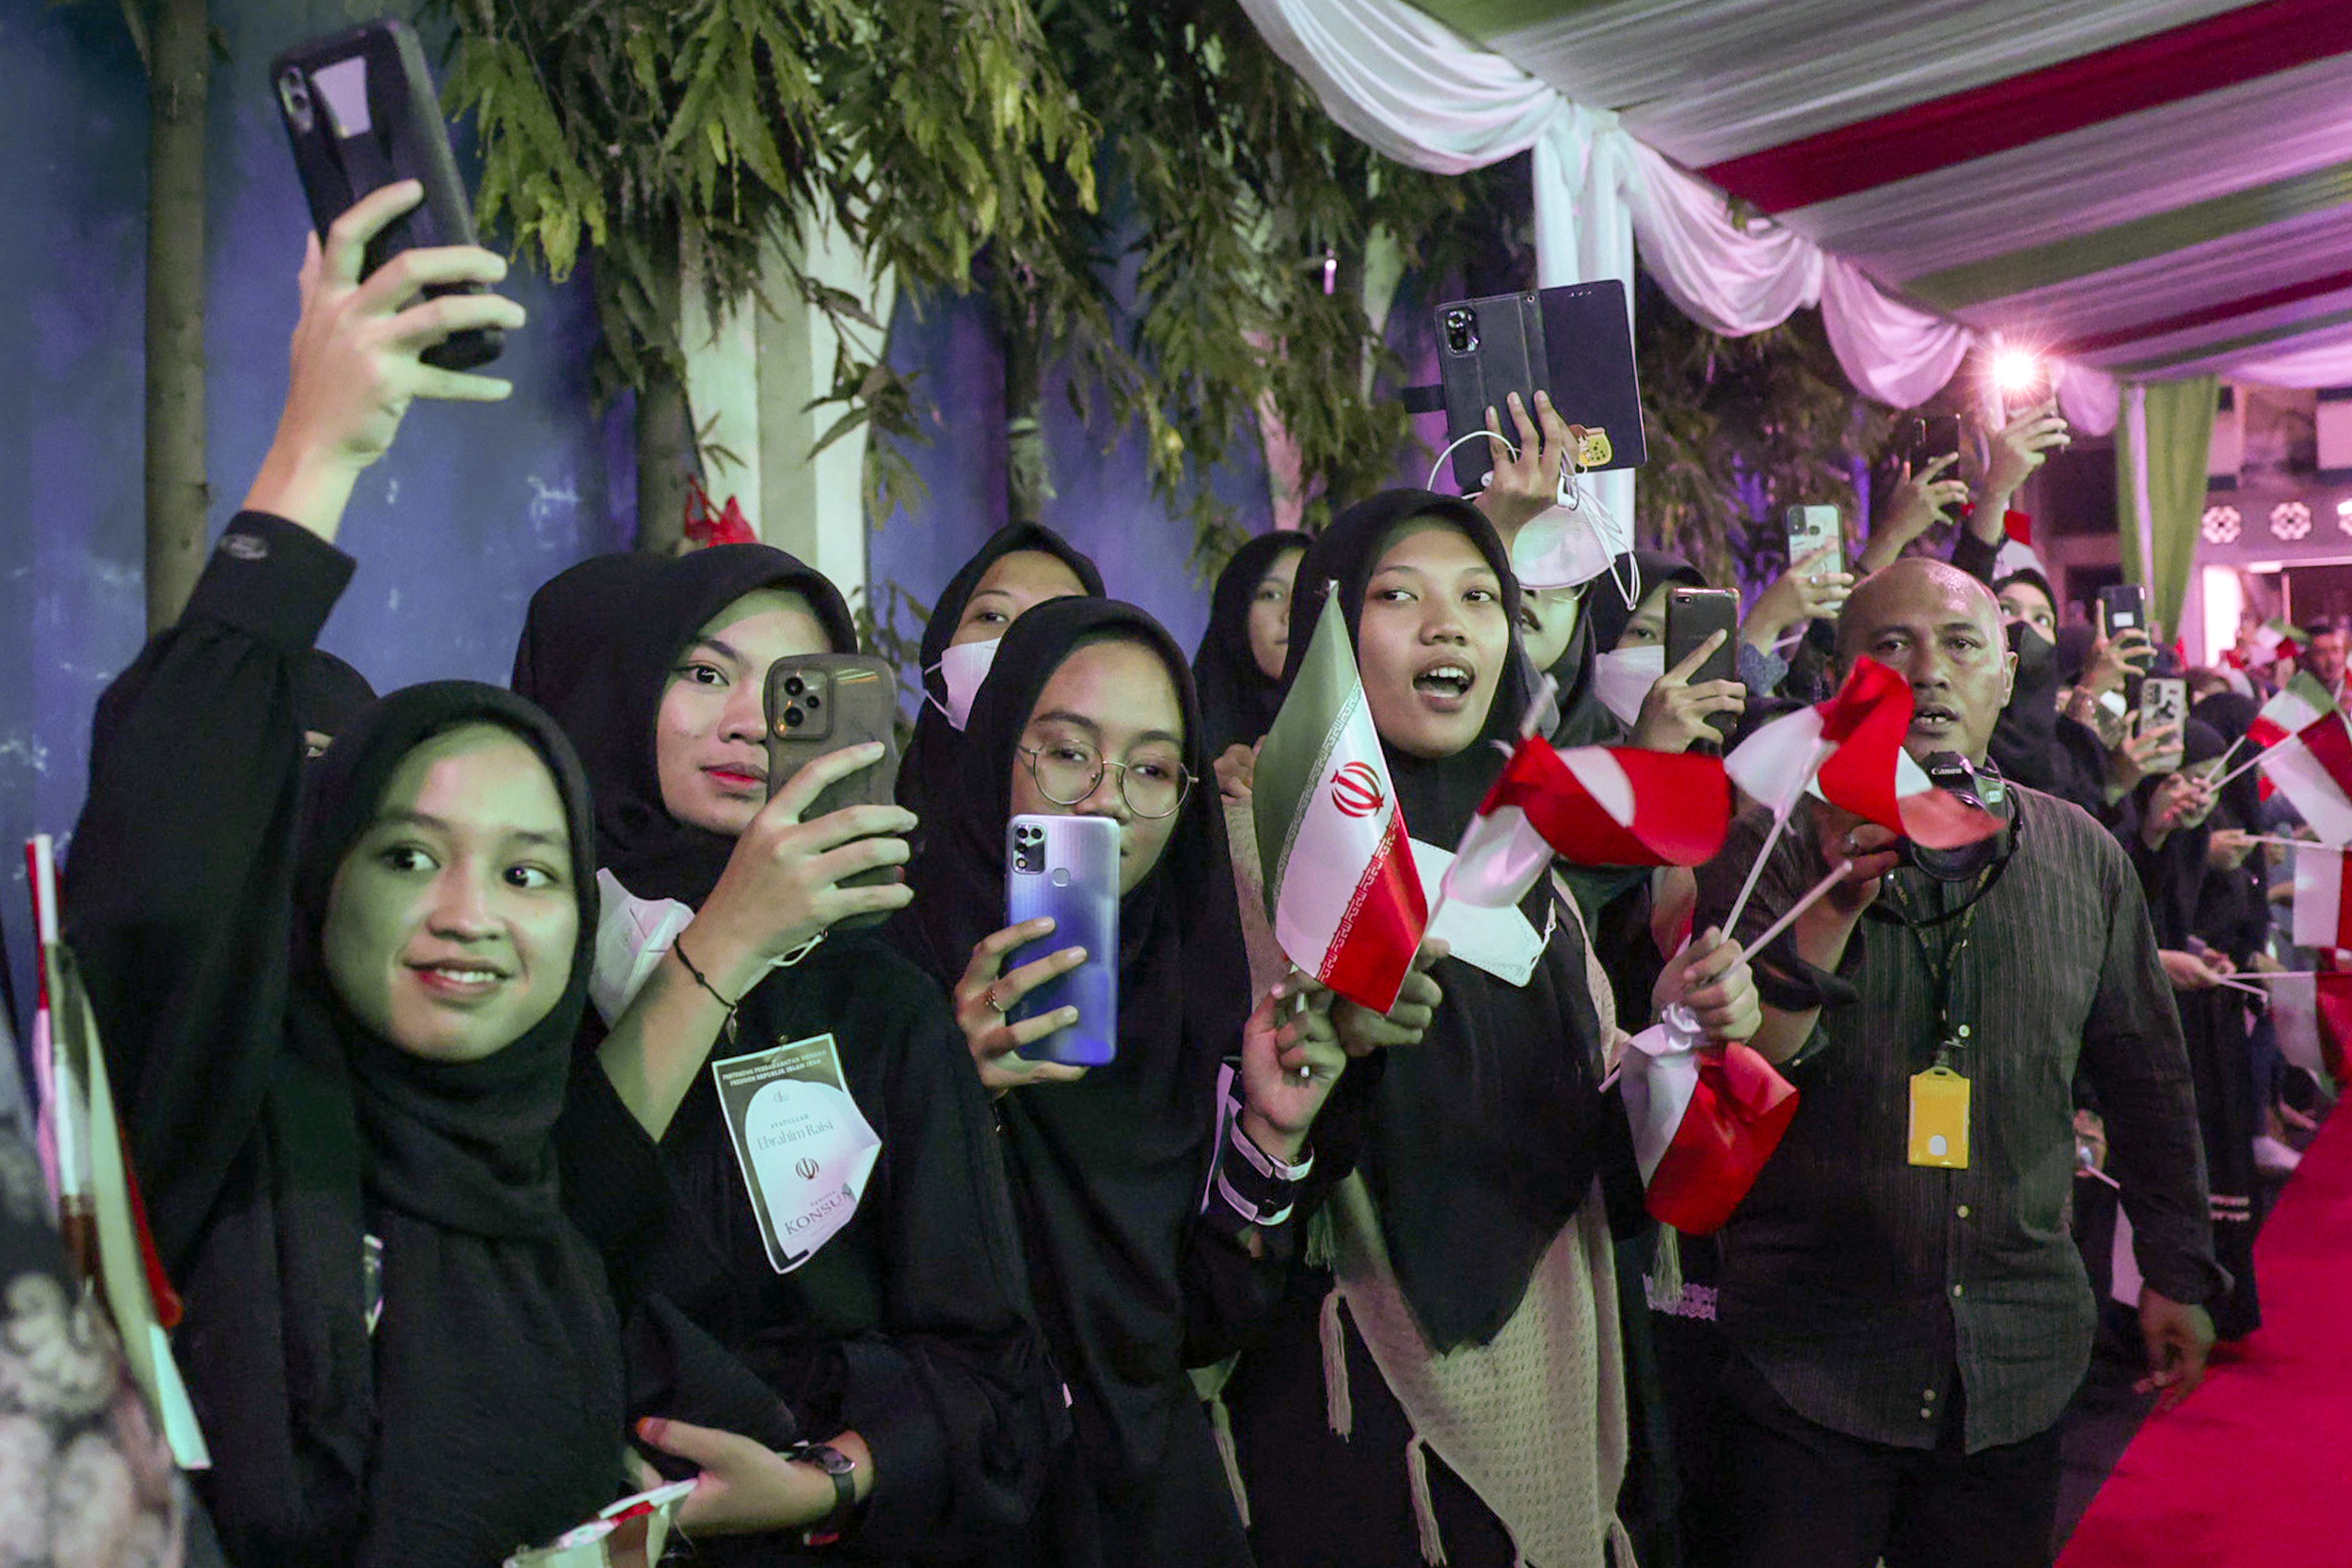 پوشش متفاوت زنان اندونزی مقابل ابراهیم رئیسی